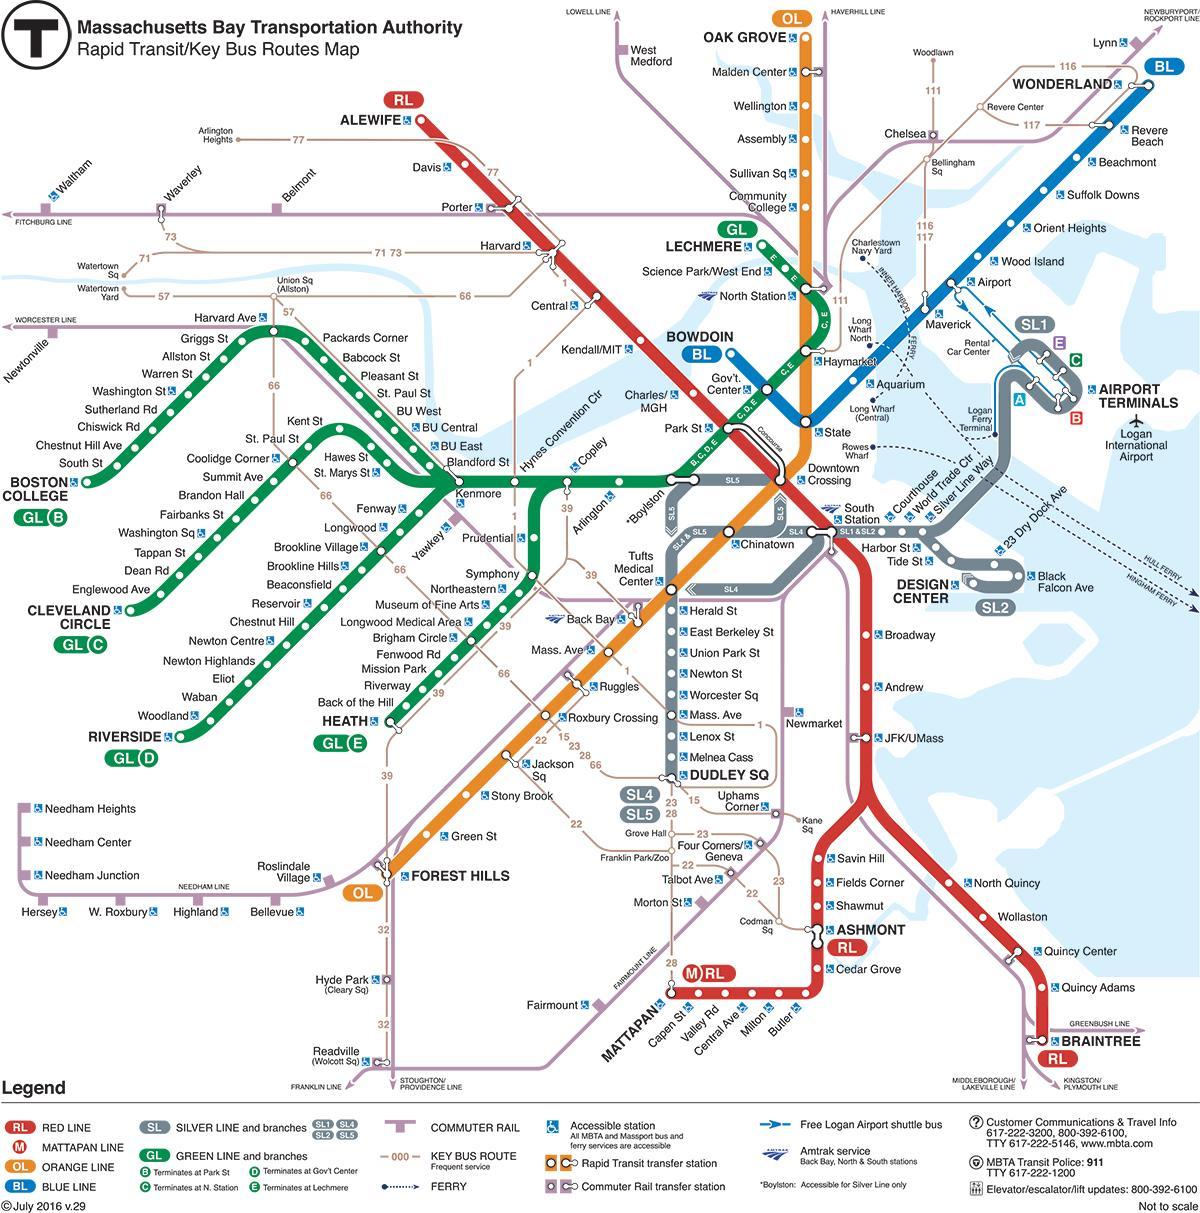 зелена линија на мапи Бостона